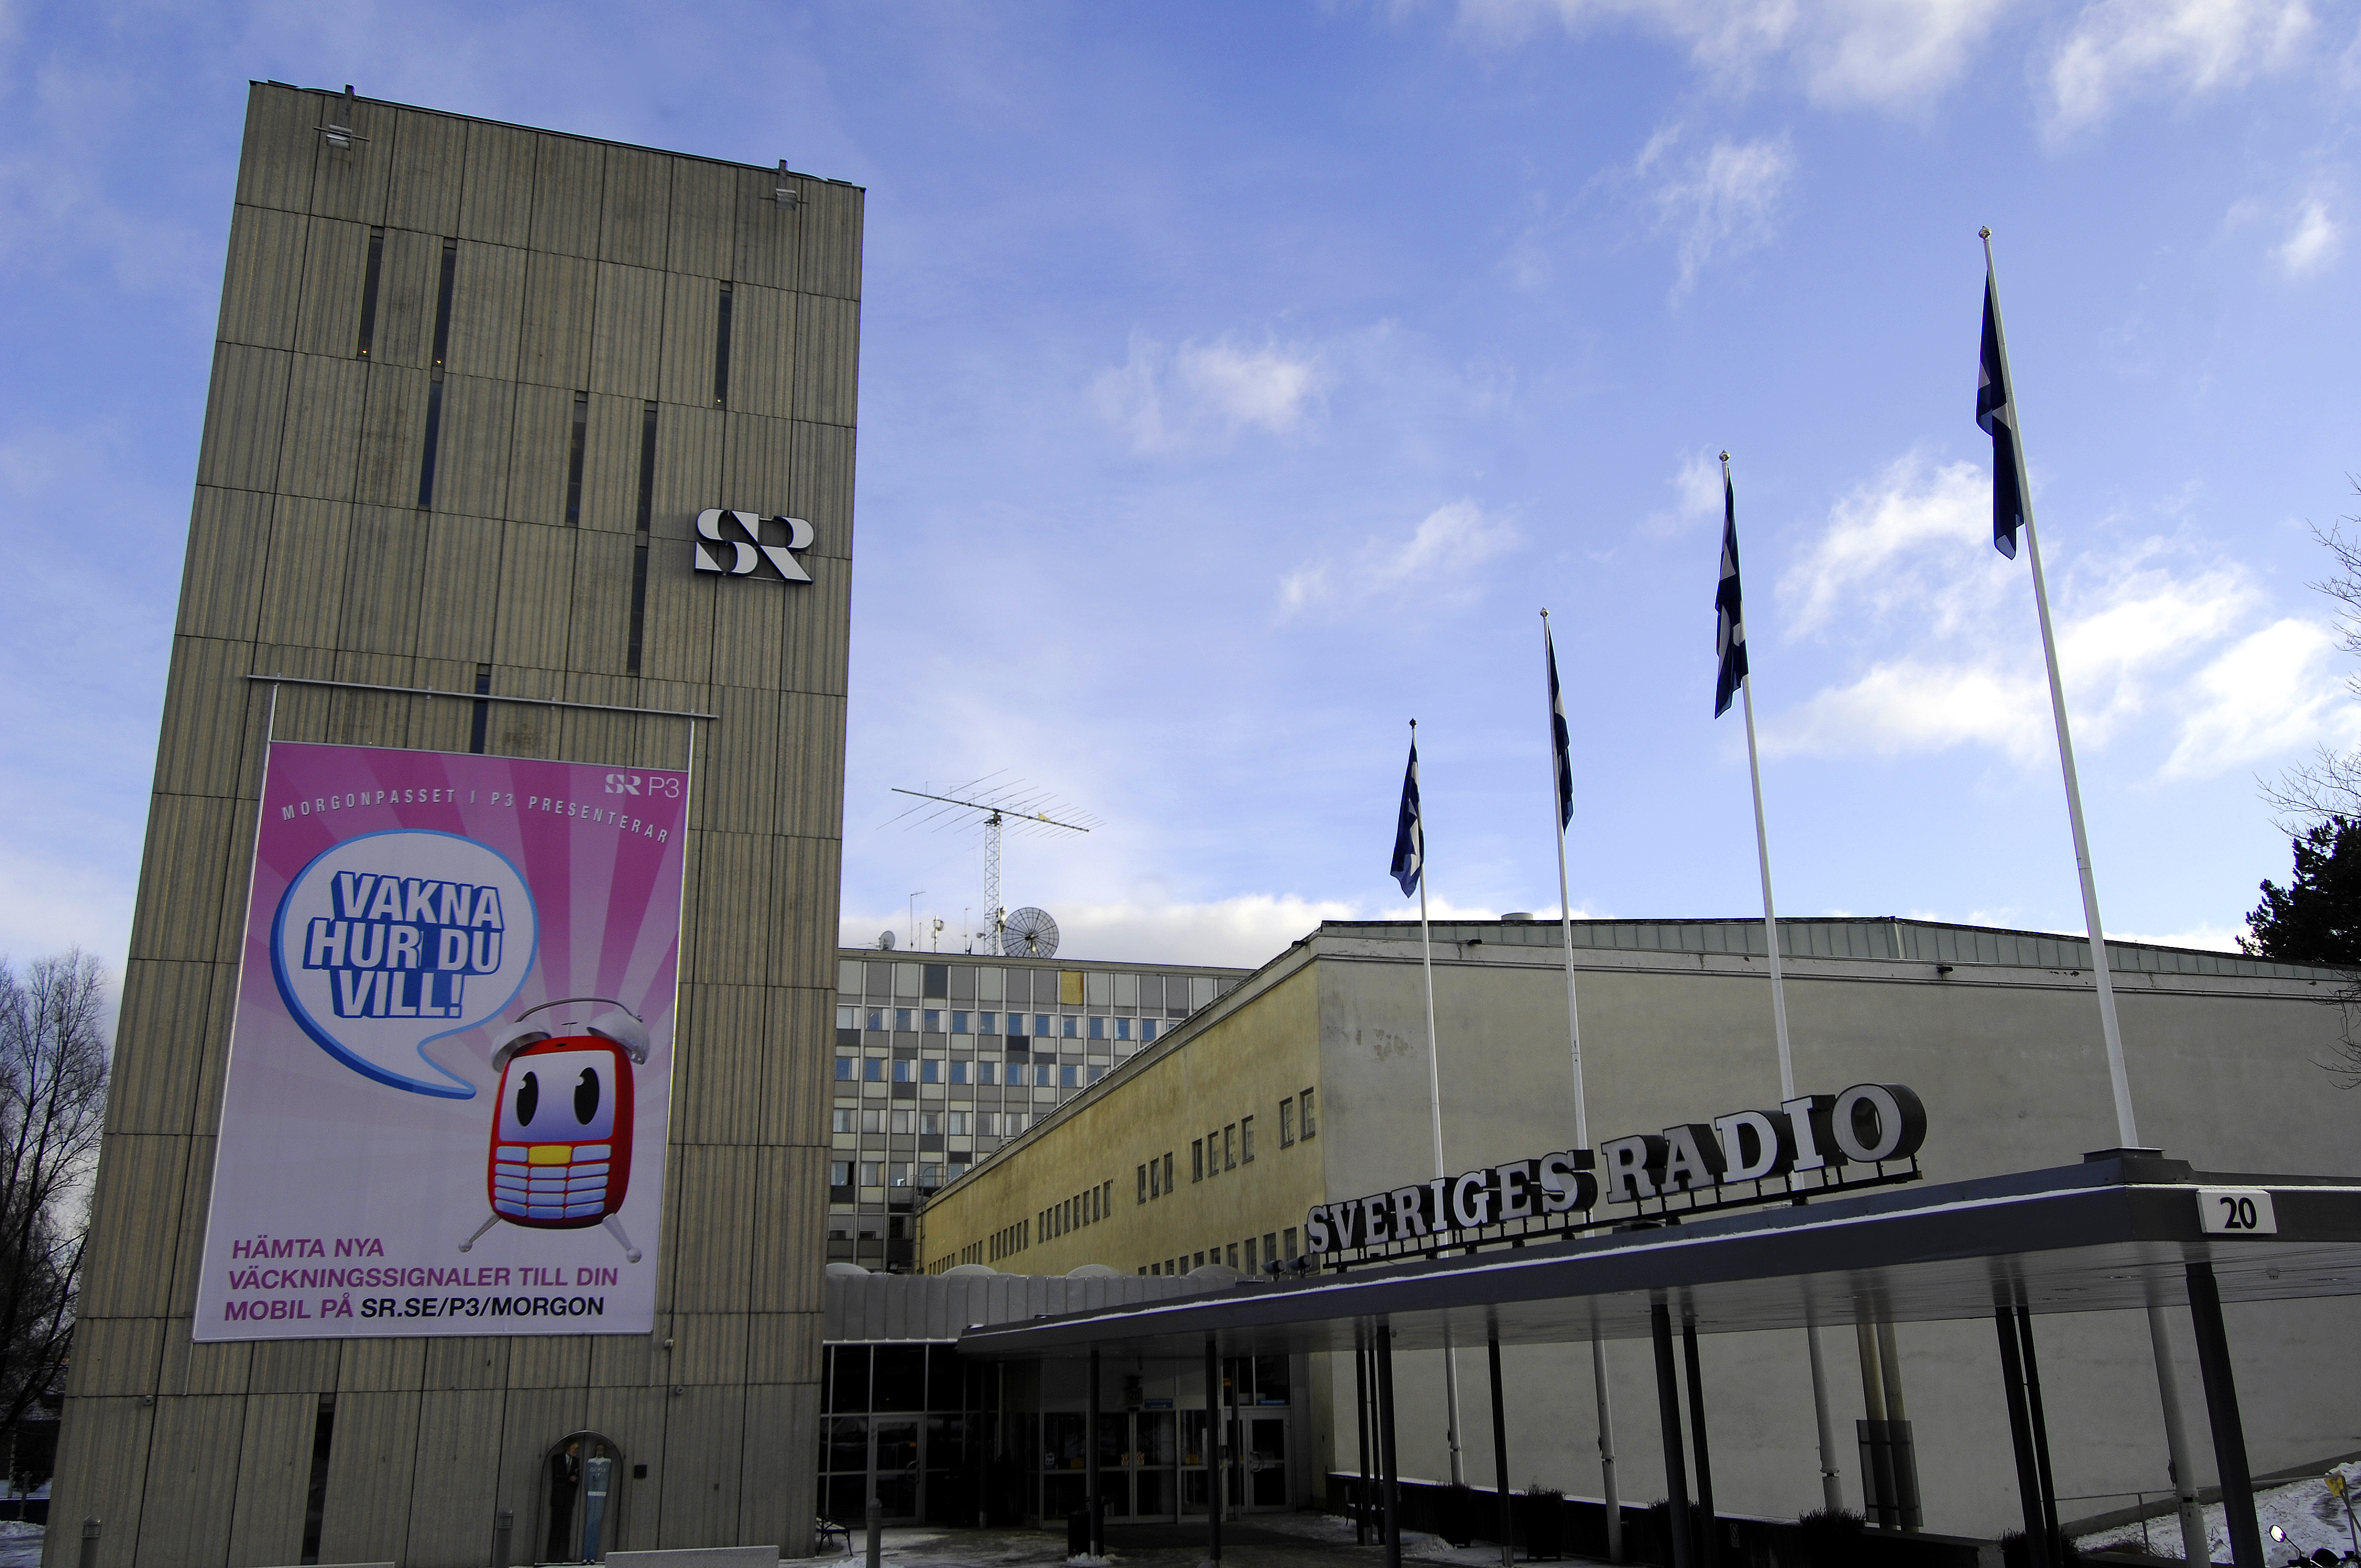 Nyheter24, Sommar, Varumärke, Sveriges Radio